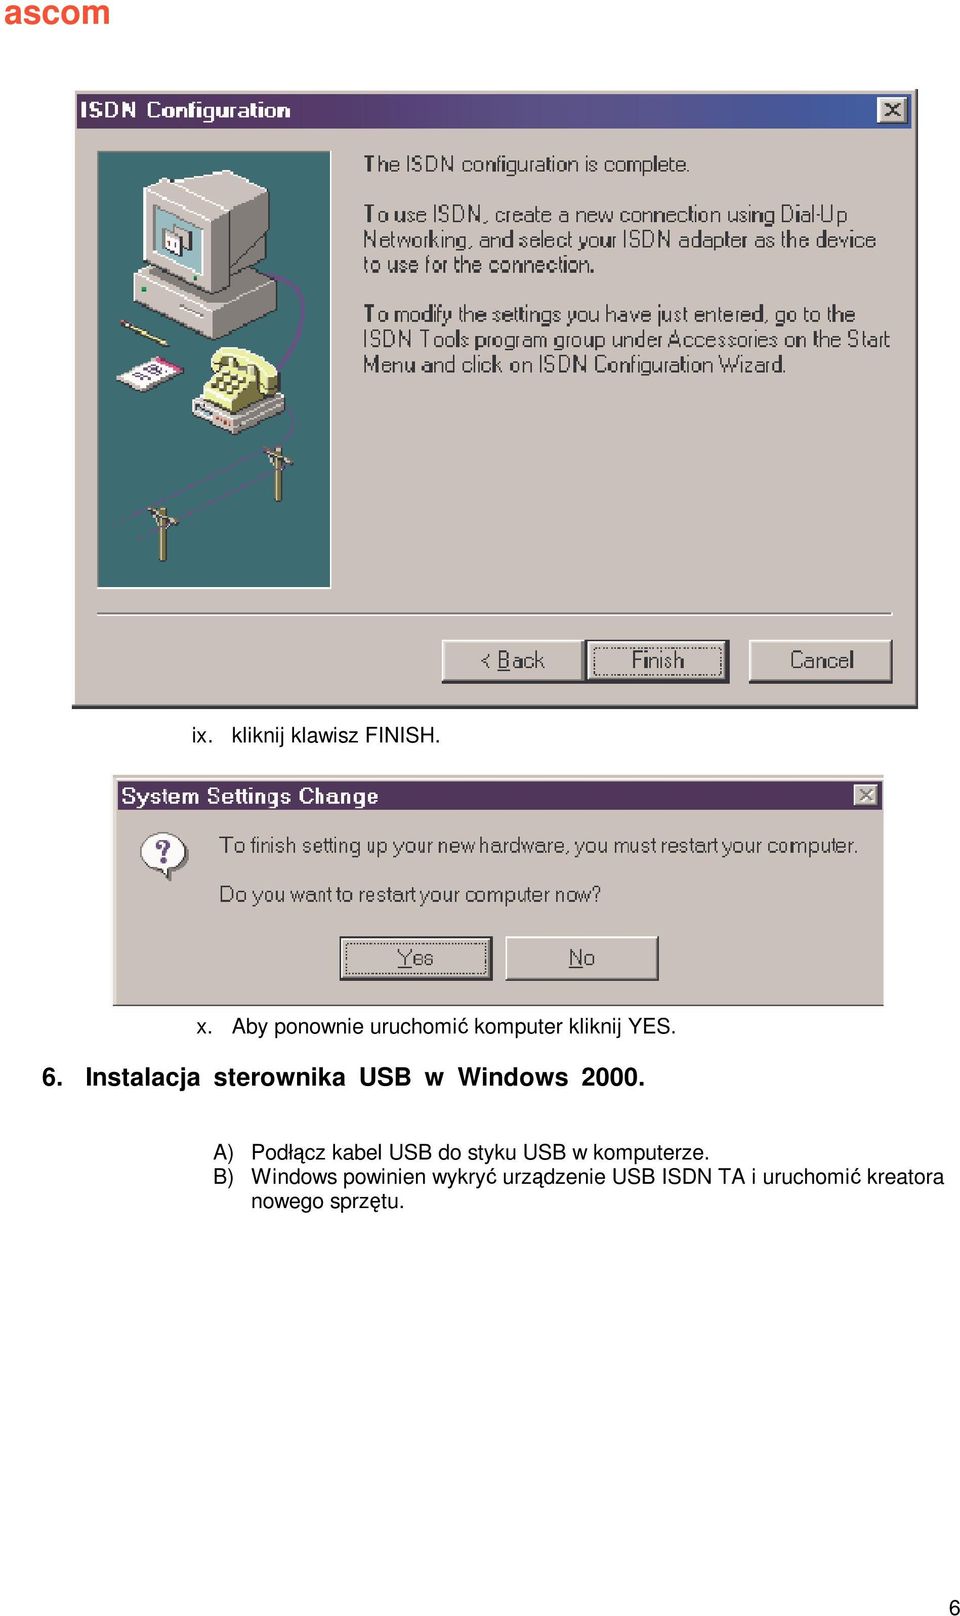 Instalacja sterownika USB w Windows 2000.